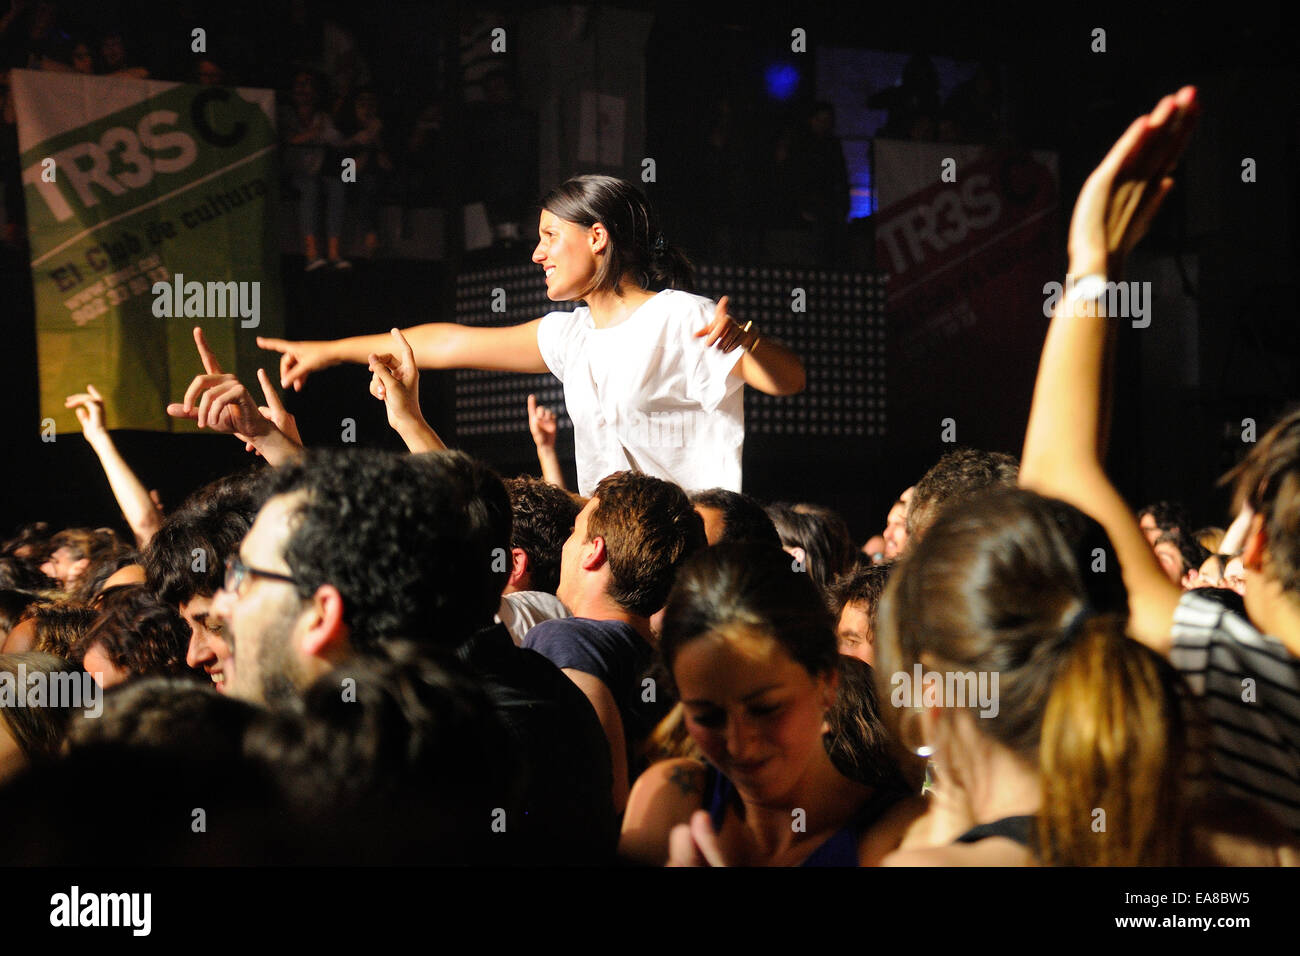 BARCELONA - 16 de mayo: una niña se levanta sobre la multitud en un concierto en la discoteca Razzmatazz el 16 de mayo de 2014 en Barcelona, España. Foto de stock